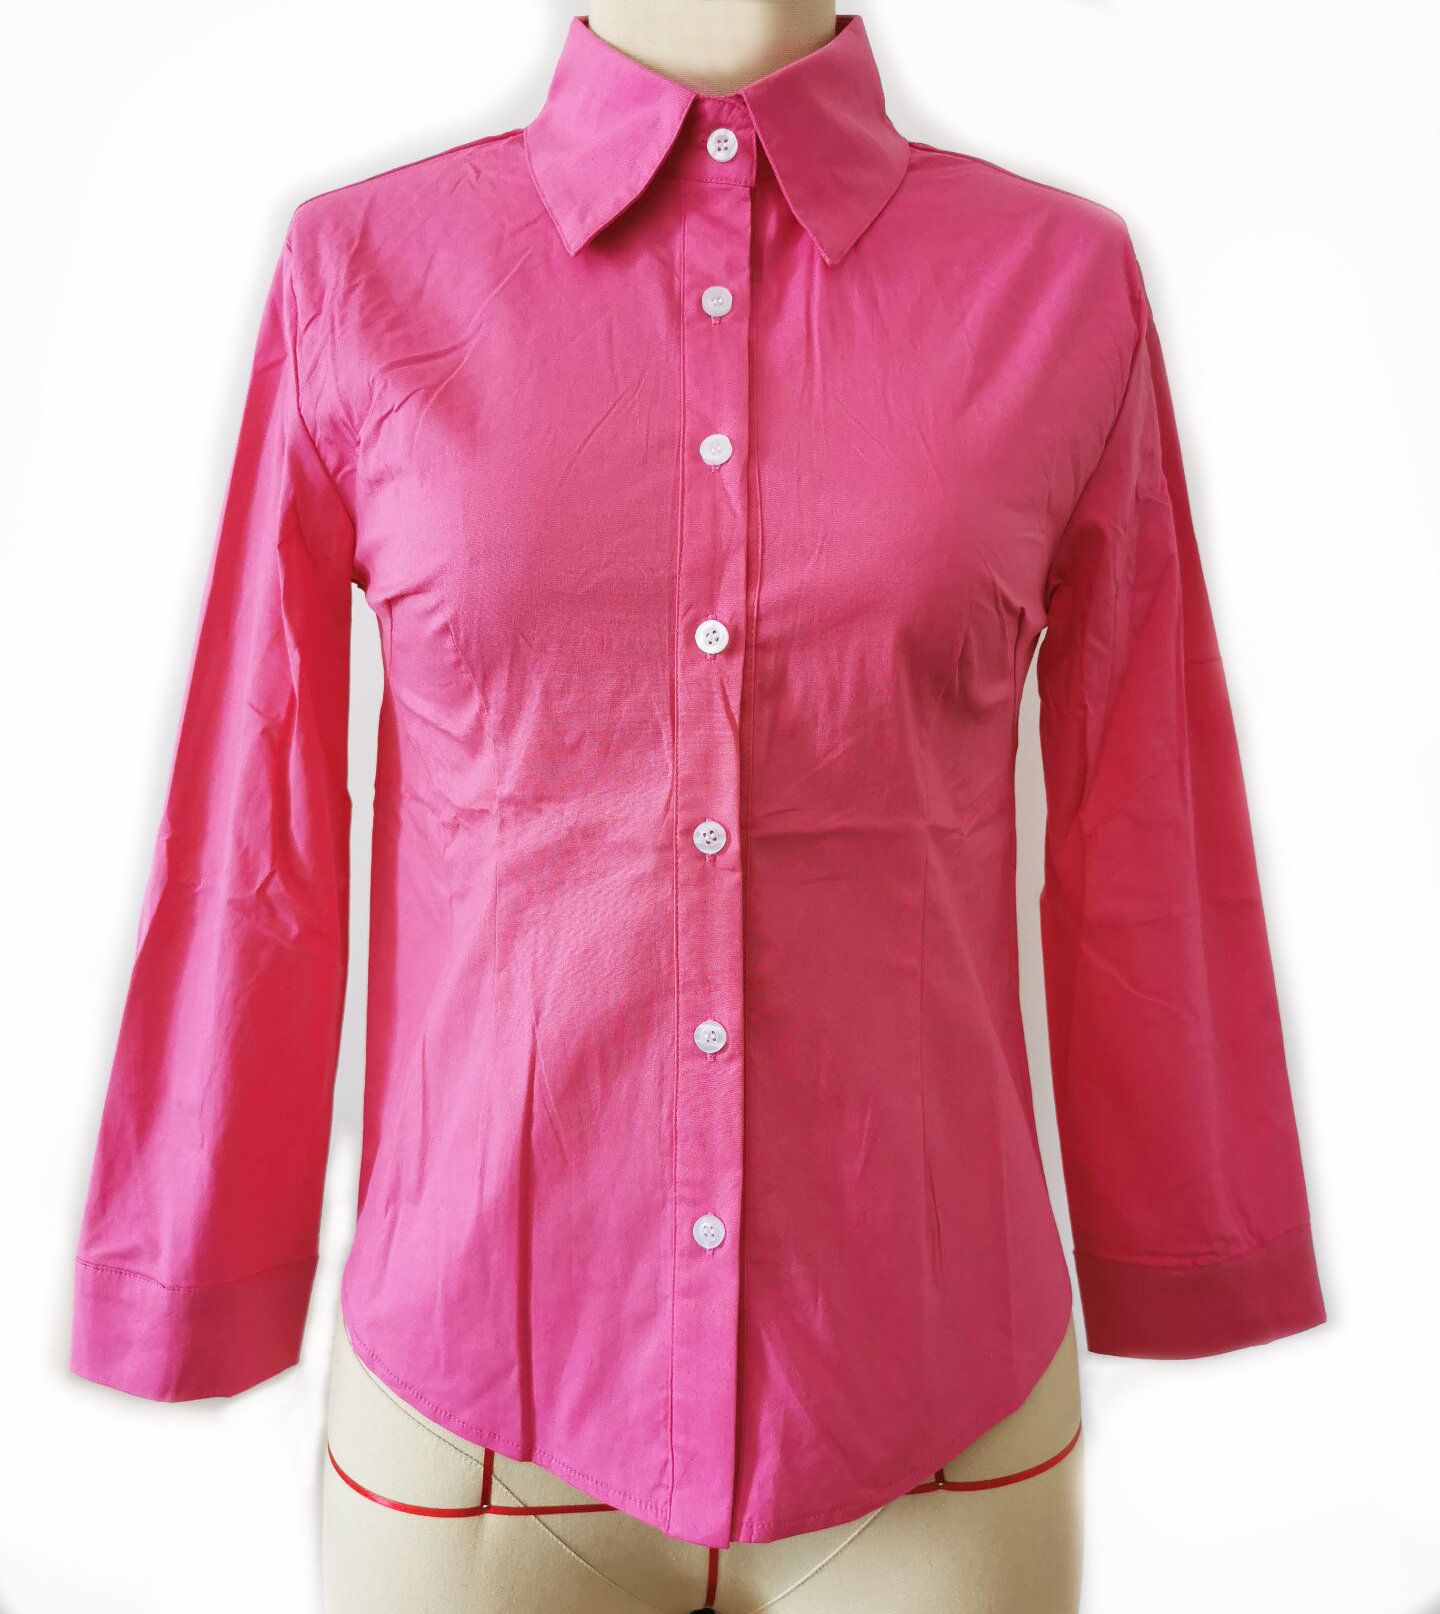 Janet's Office Girl Button Shirt - Hot Pink